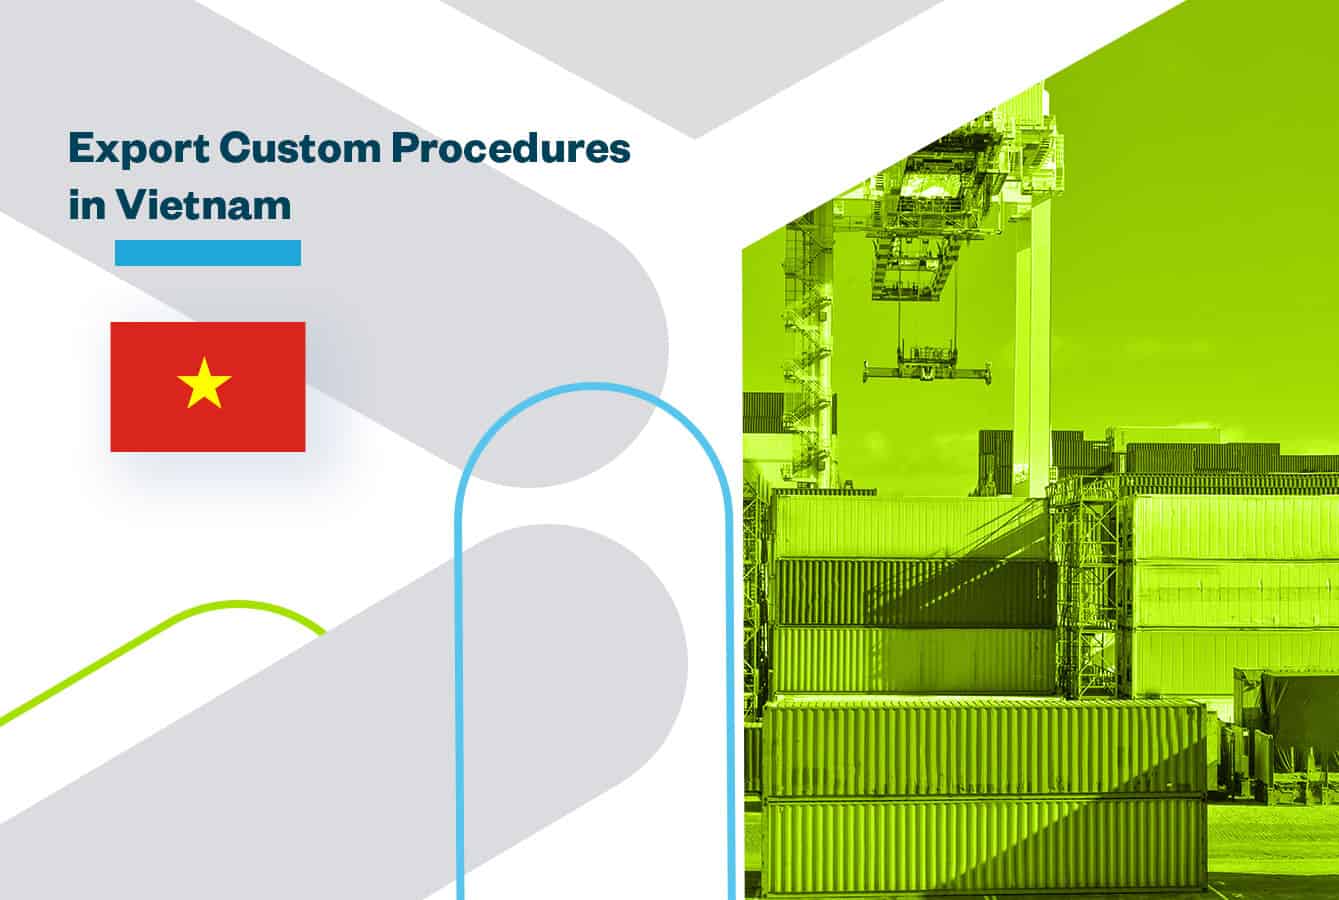 Export Customs Procedures in Vietnam